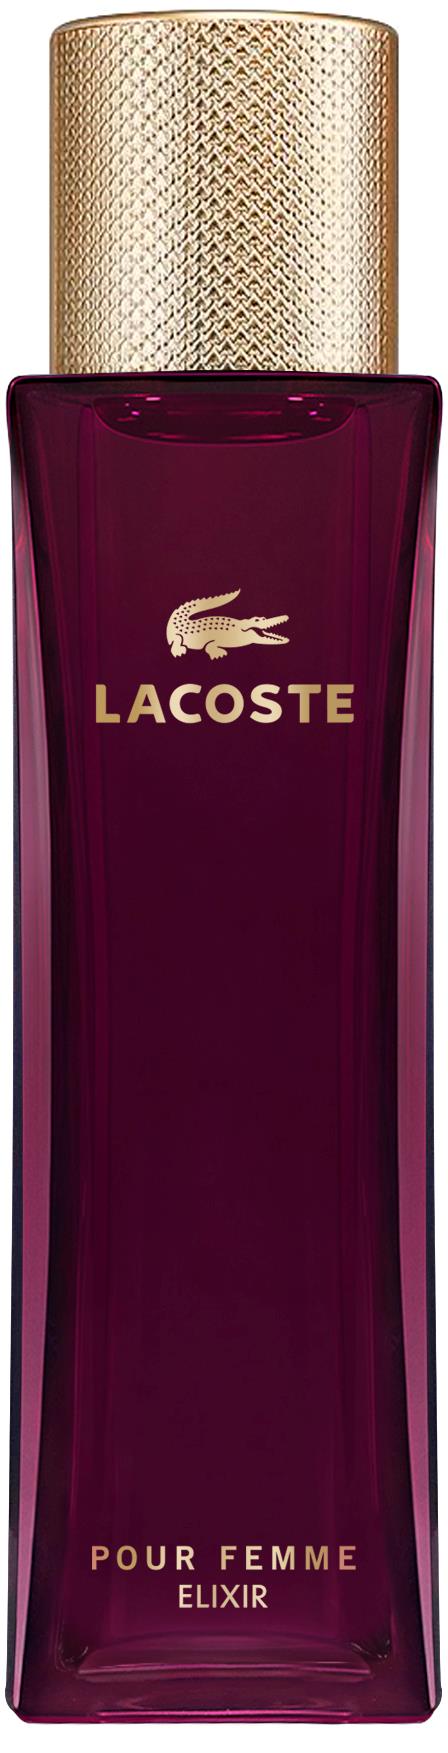 Lacoste Pour Femme Elixir De Parfum 50 ml | lyko.com